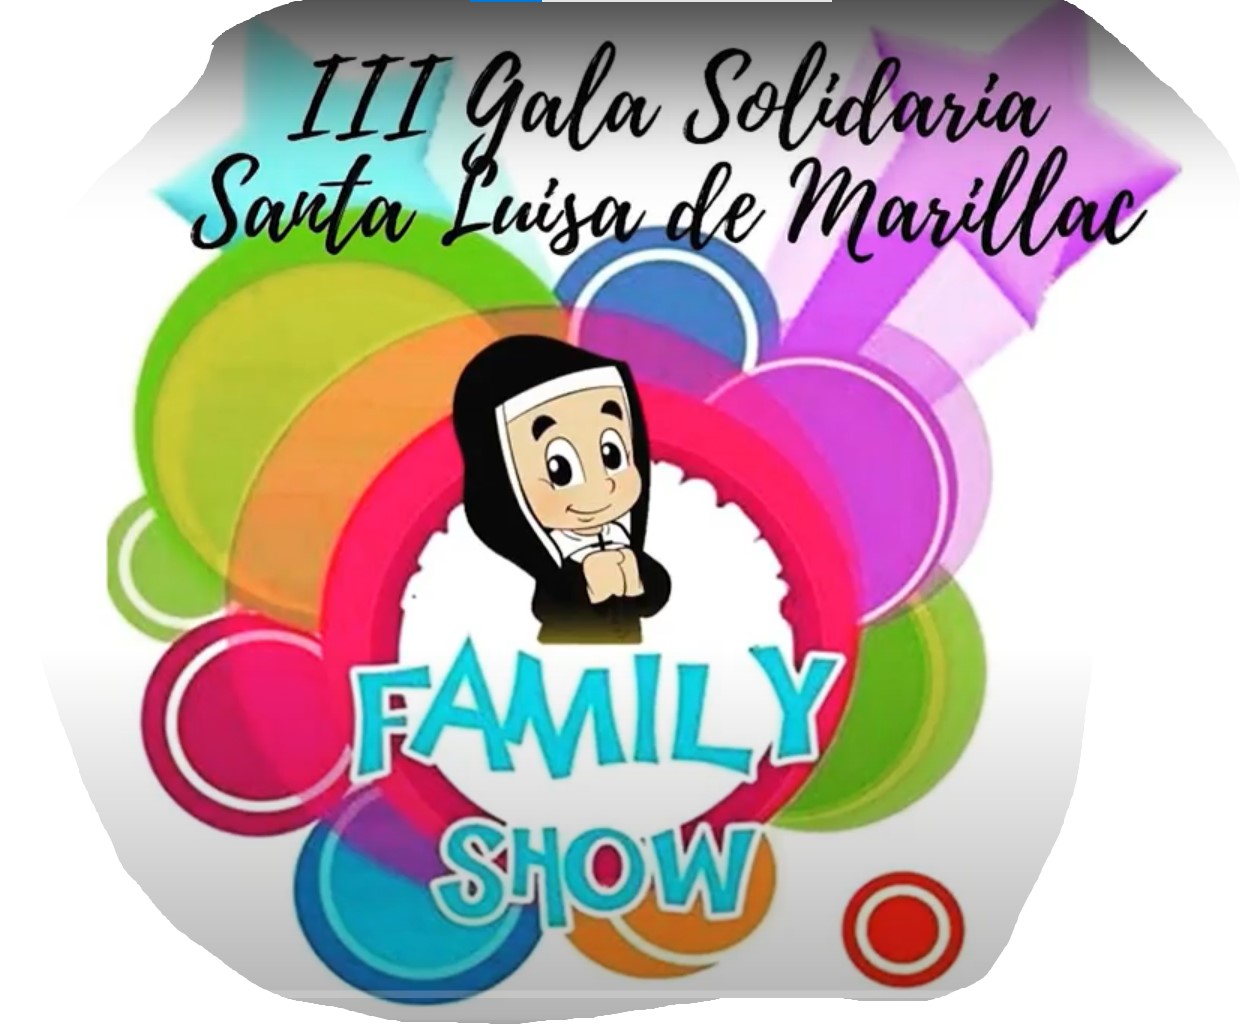 III Gala Solidaria Santa Luisa de Marillac